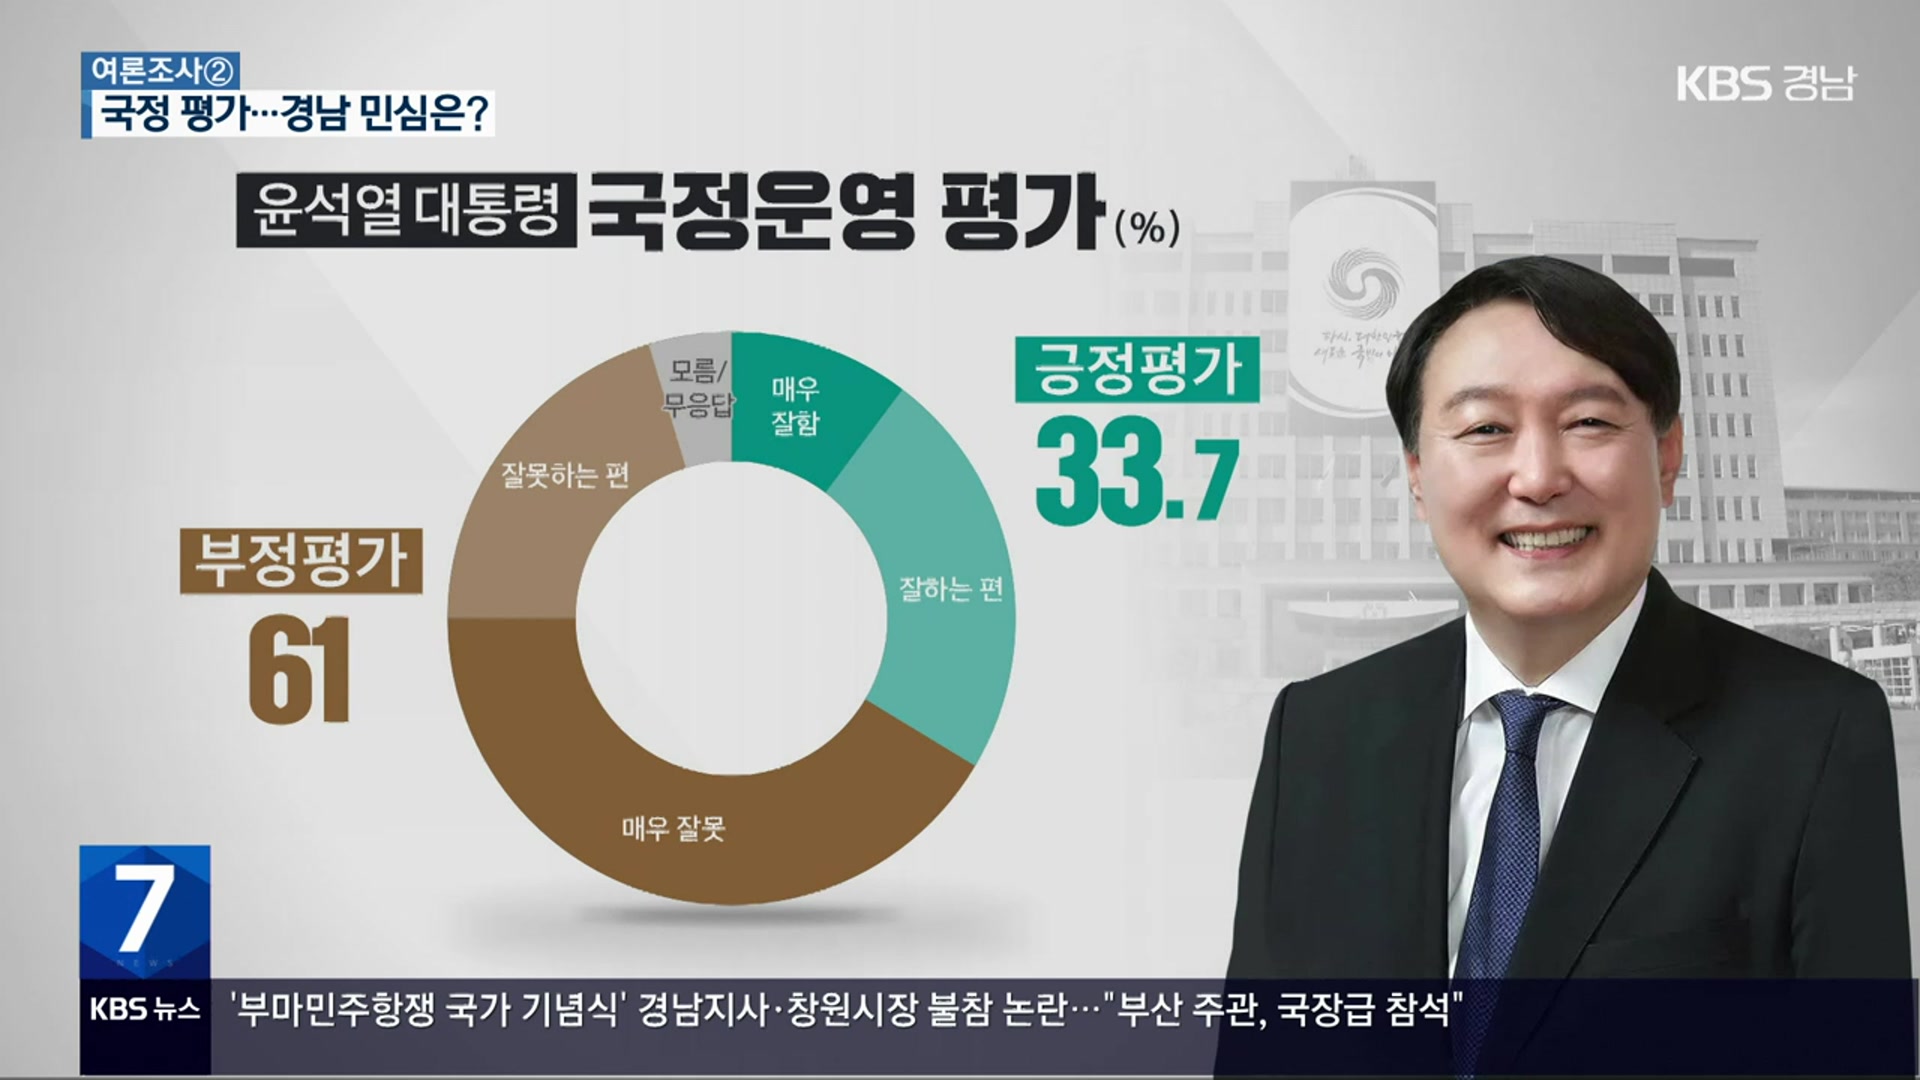 [경남 여론조사] 윤 대통령 국정운영 “못한다” 61%·“잘한다” 33.7%